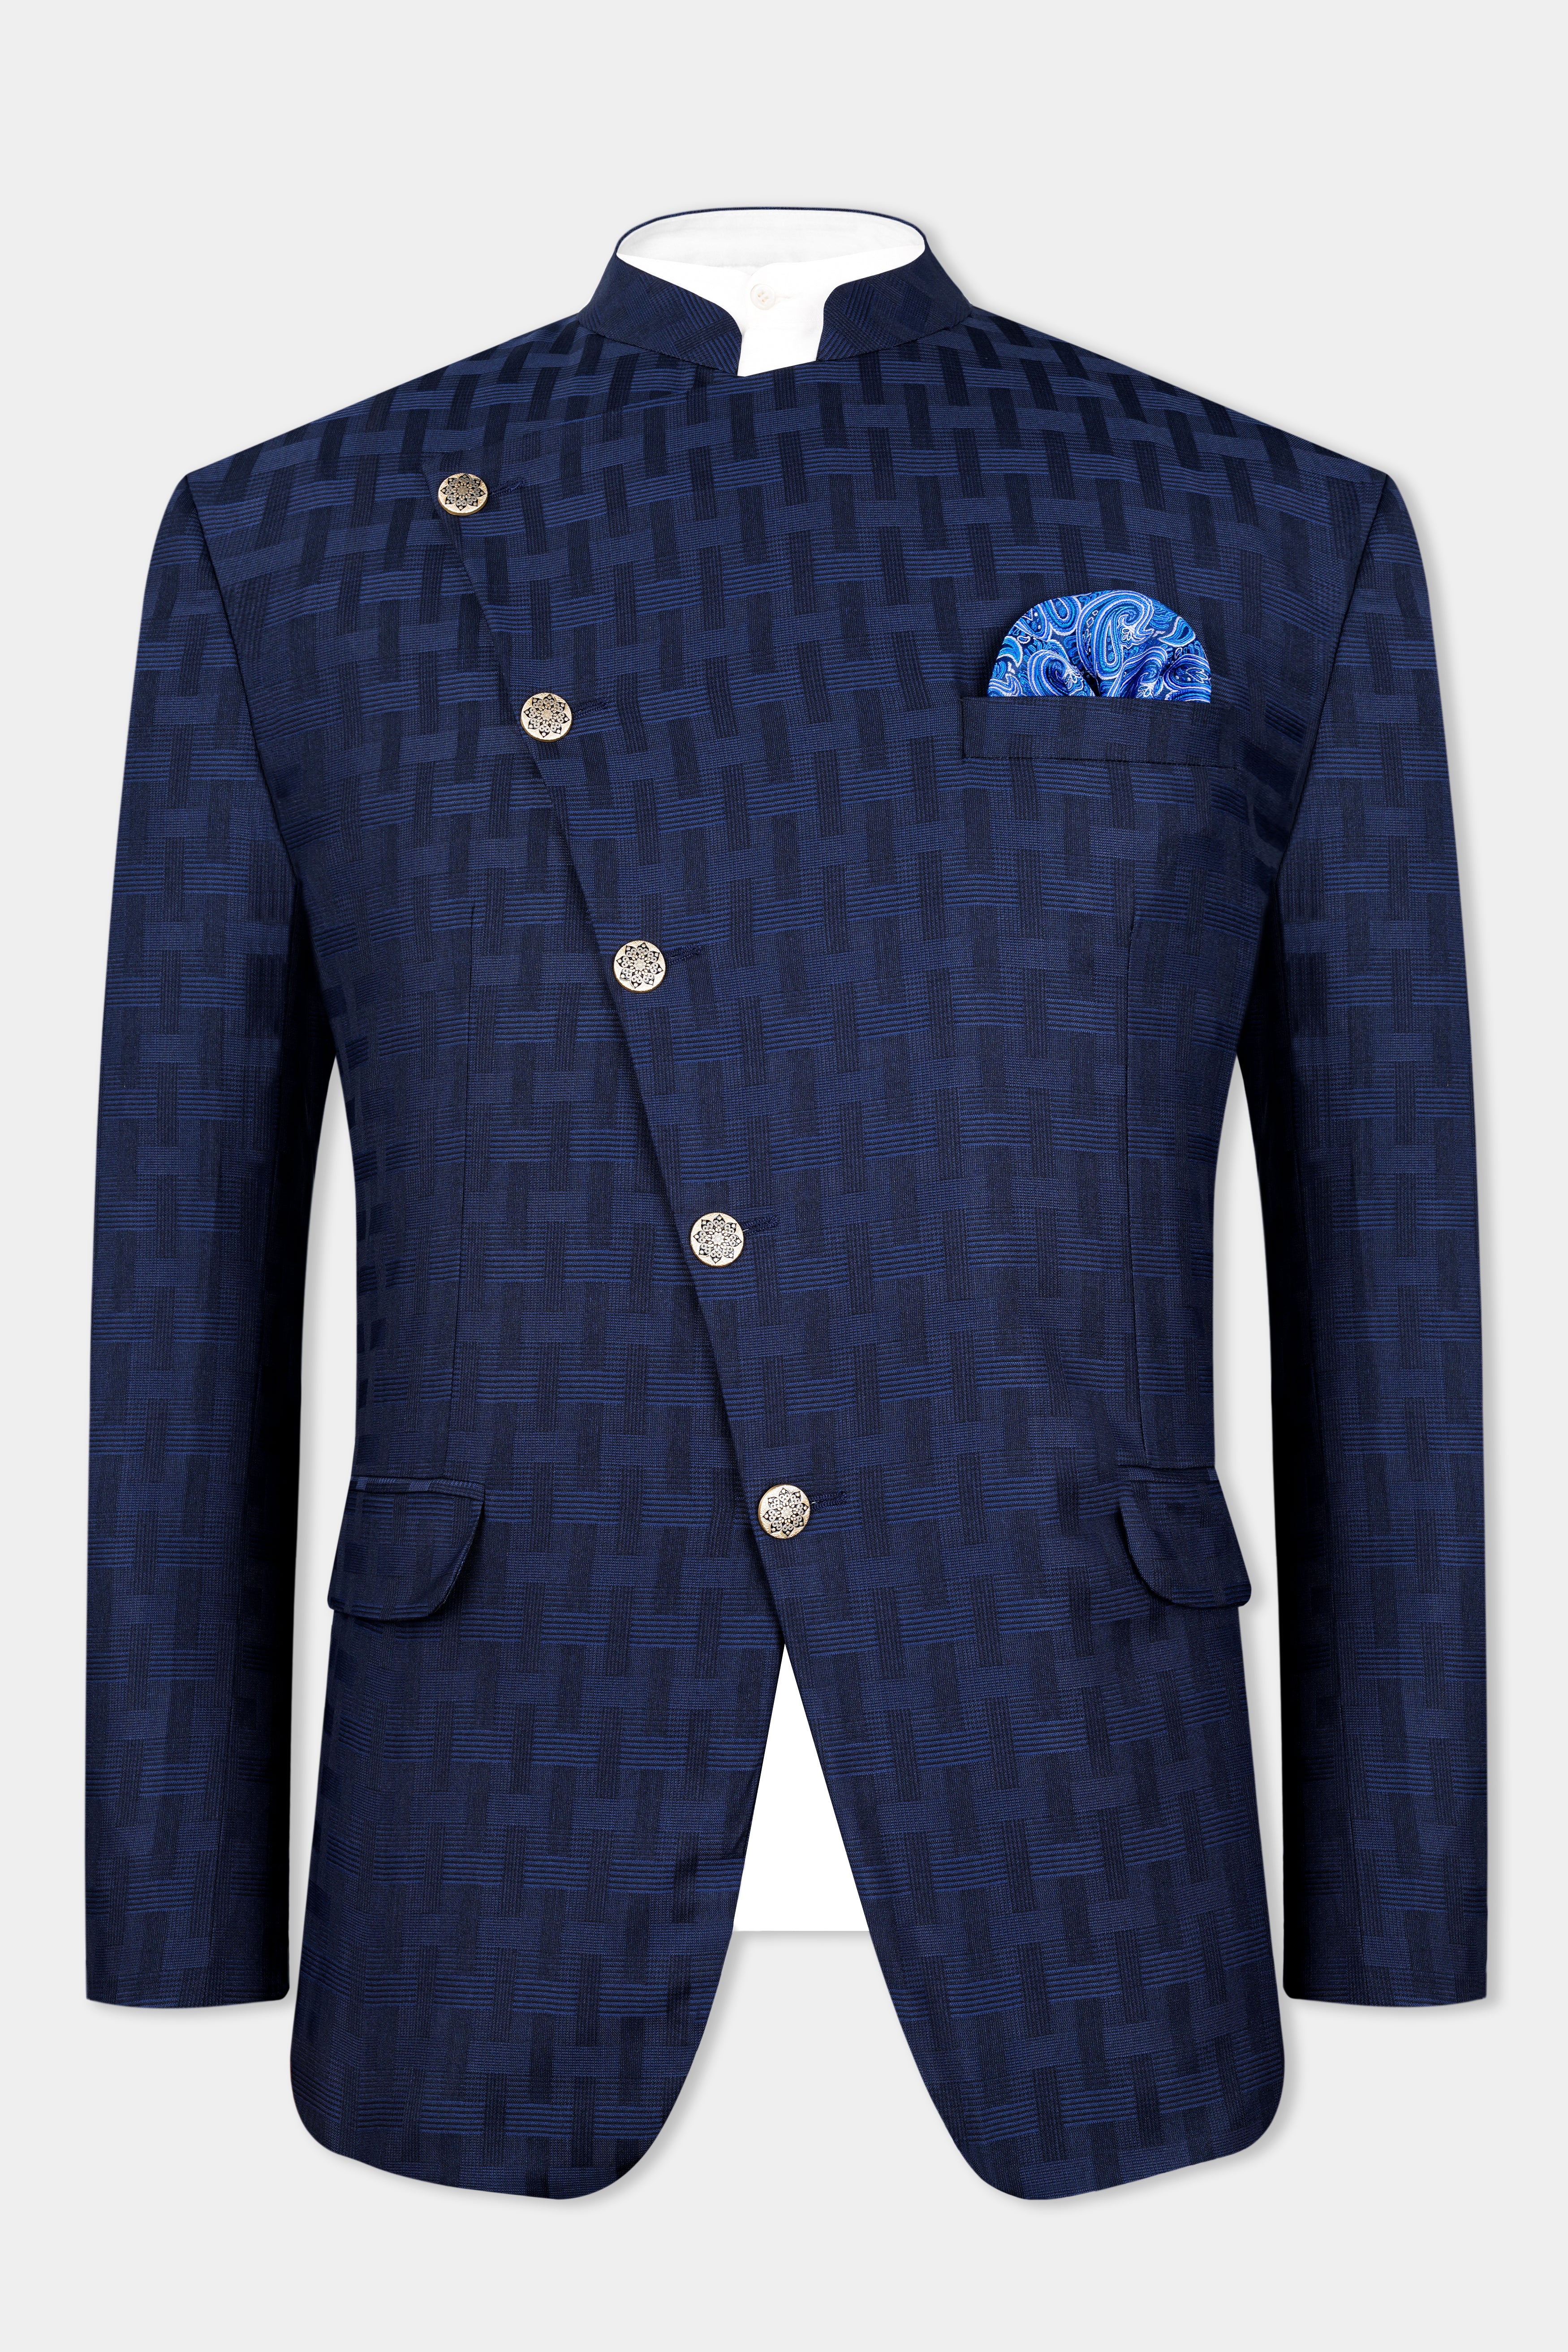 Haiti Blue Wool Rich Cross Buttoned Bandhgala Suit ST2956-CBG-36, ST2956-CBG-38, ST2956-CBG-40, ST2956-CBG-42, ST2956-CBG-44, ST2956-CBG-46, ST2956-CBG-48, ST2956-CBG-50, ST2956-CBG-52, ST2956-CBG-54, ST2956-CBG-56, ST2956-CBG-58, ST2956-CBG-60